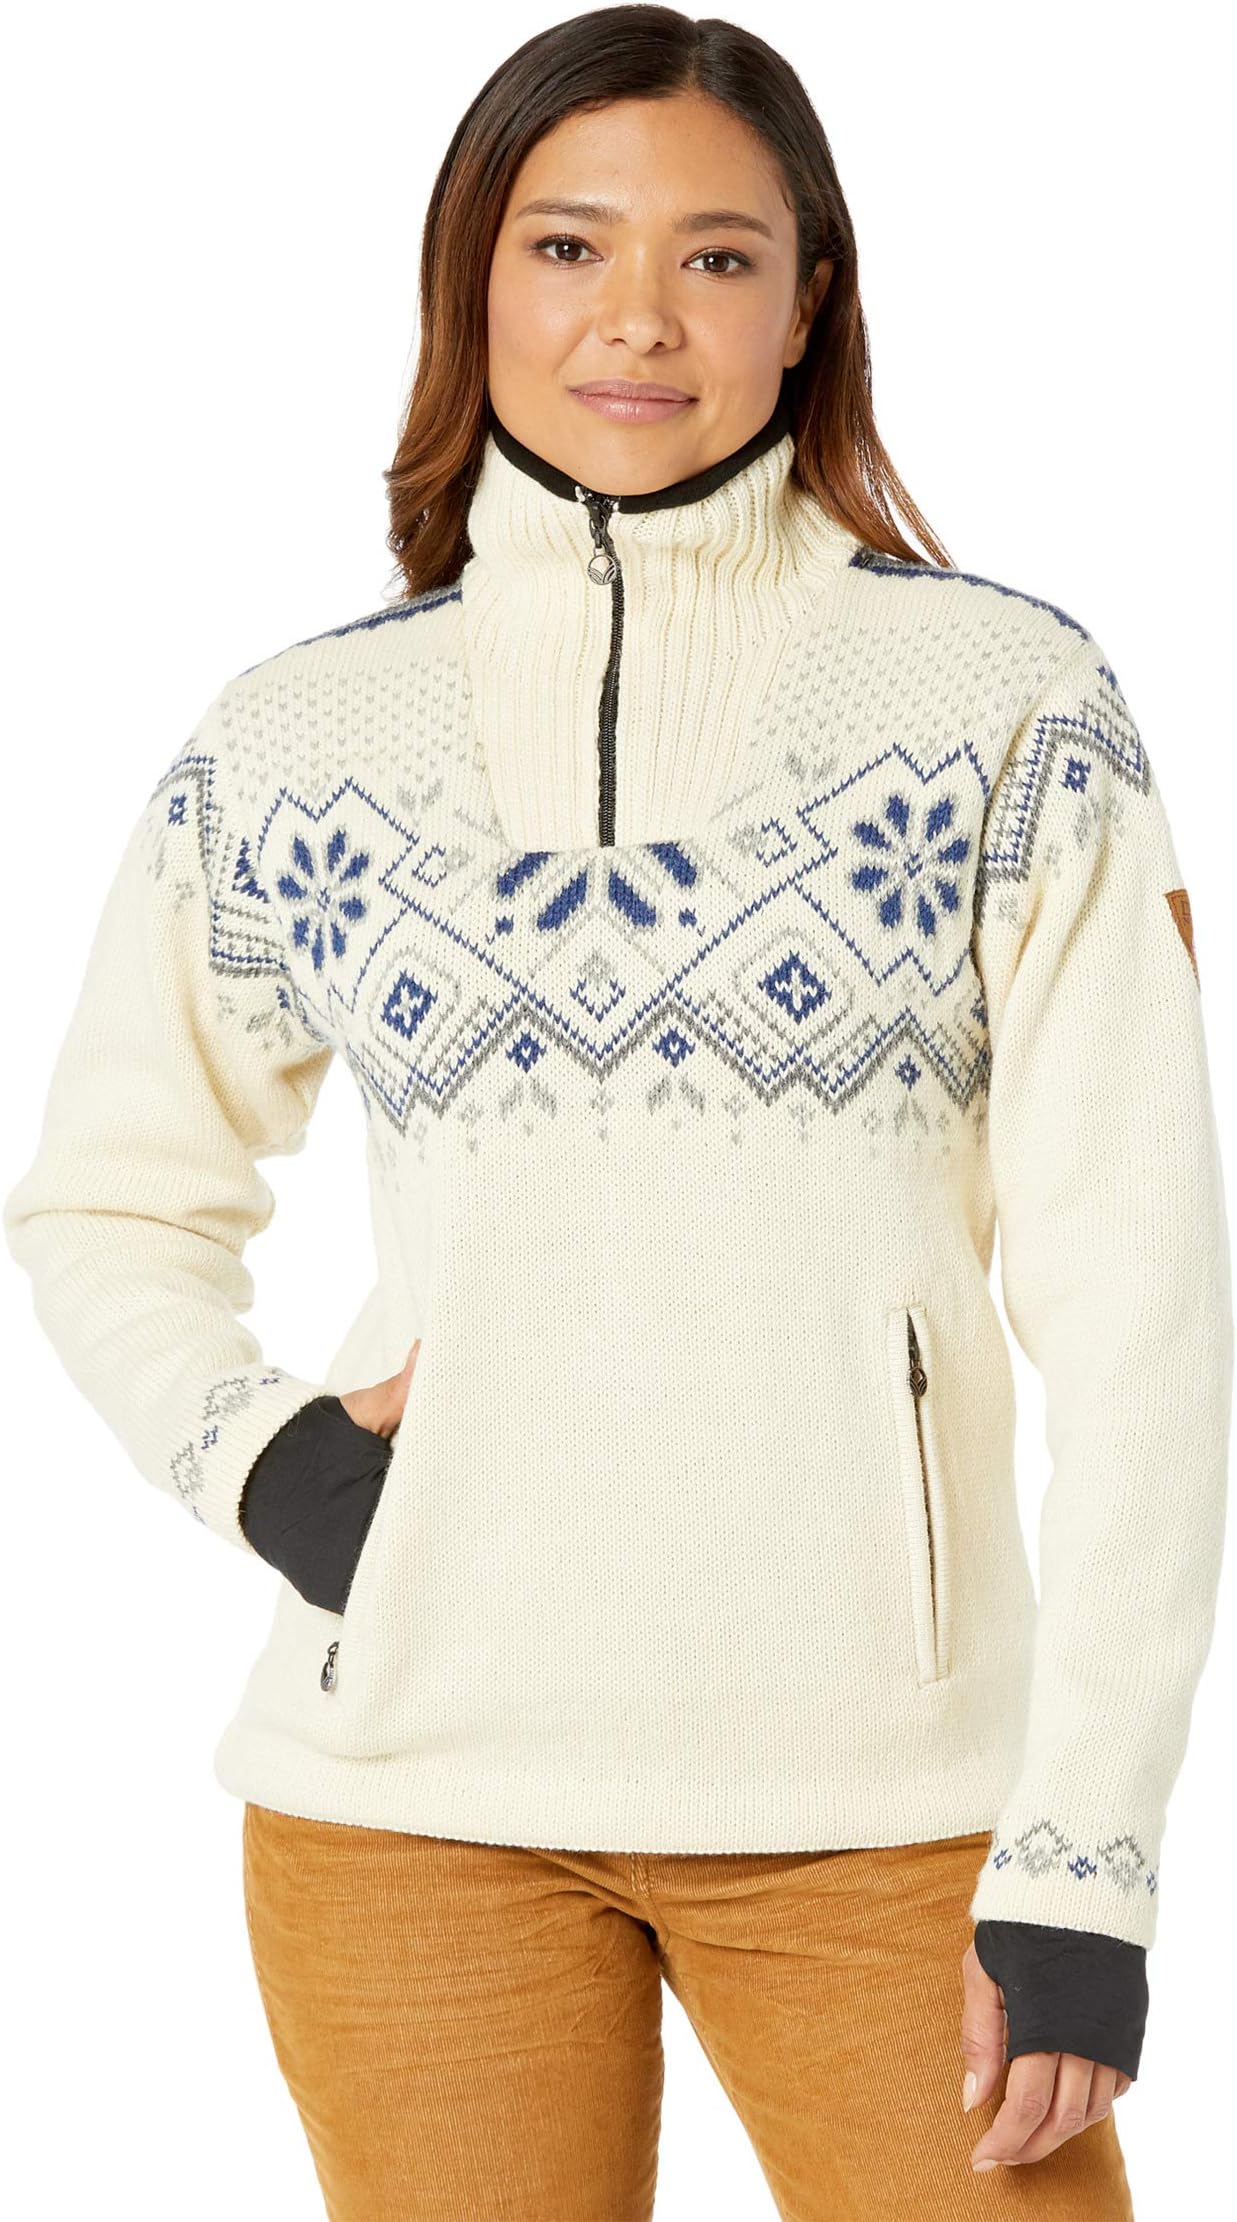 Женский свитер Fongen, устойчивый к атмосферным воздействиям Dale of Norway, цвет Off-White/Light Charcoal/Smoke